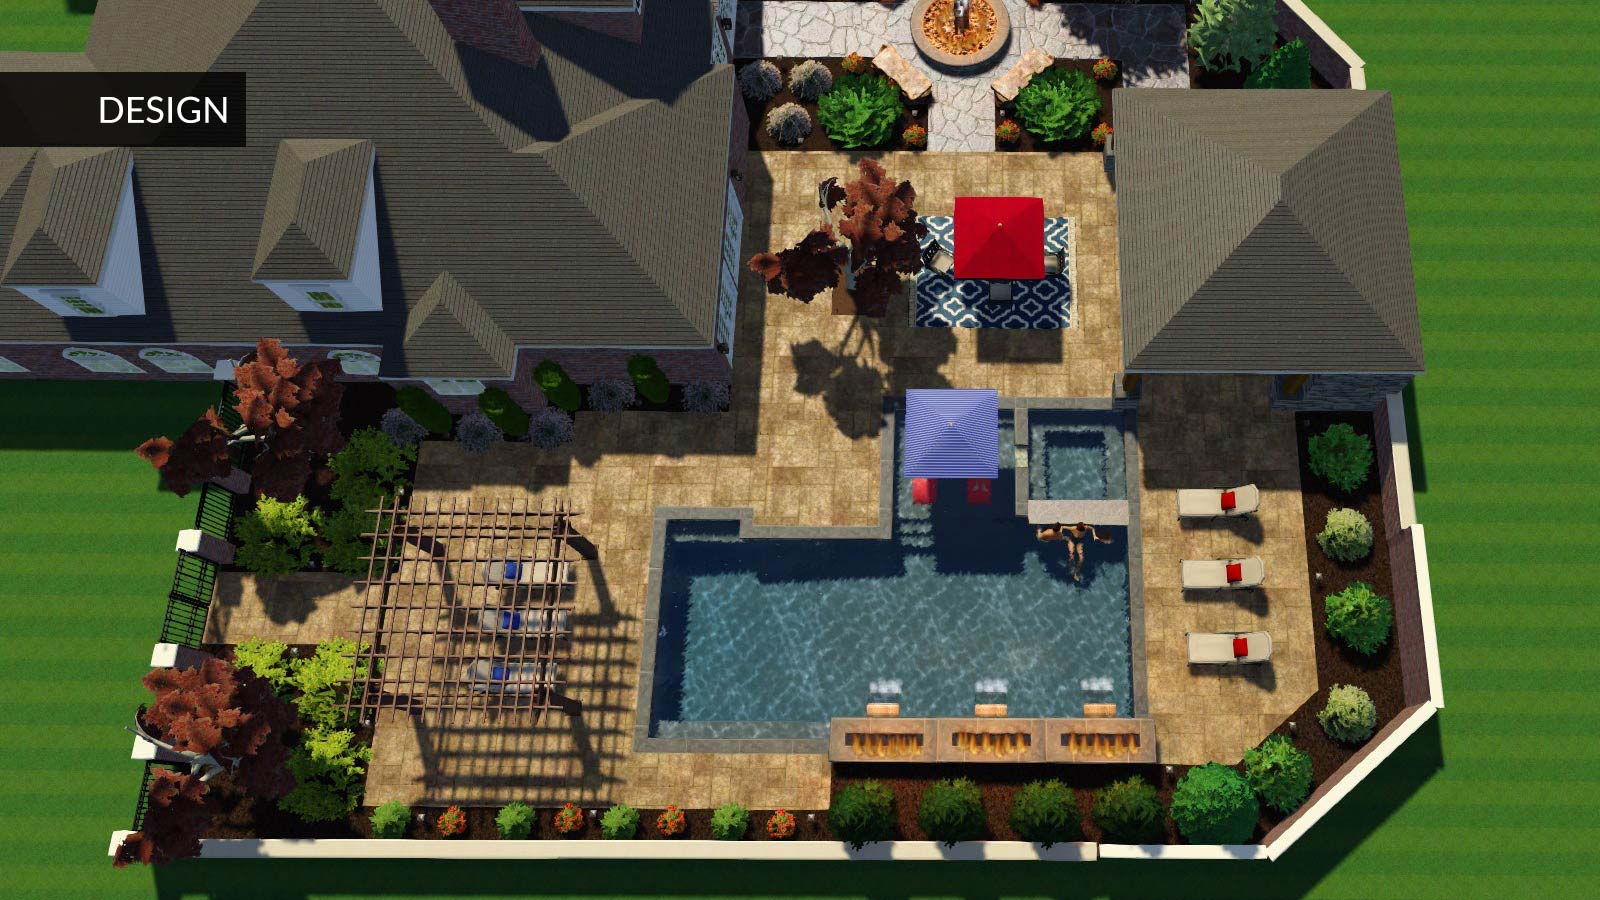 CAD render of backyard pool